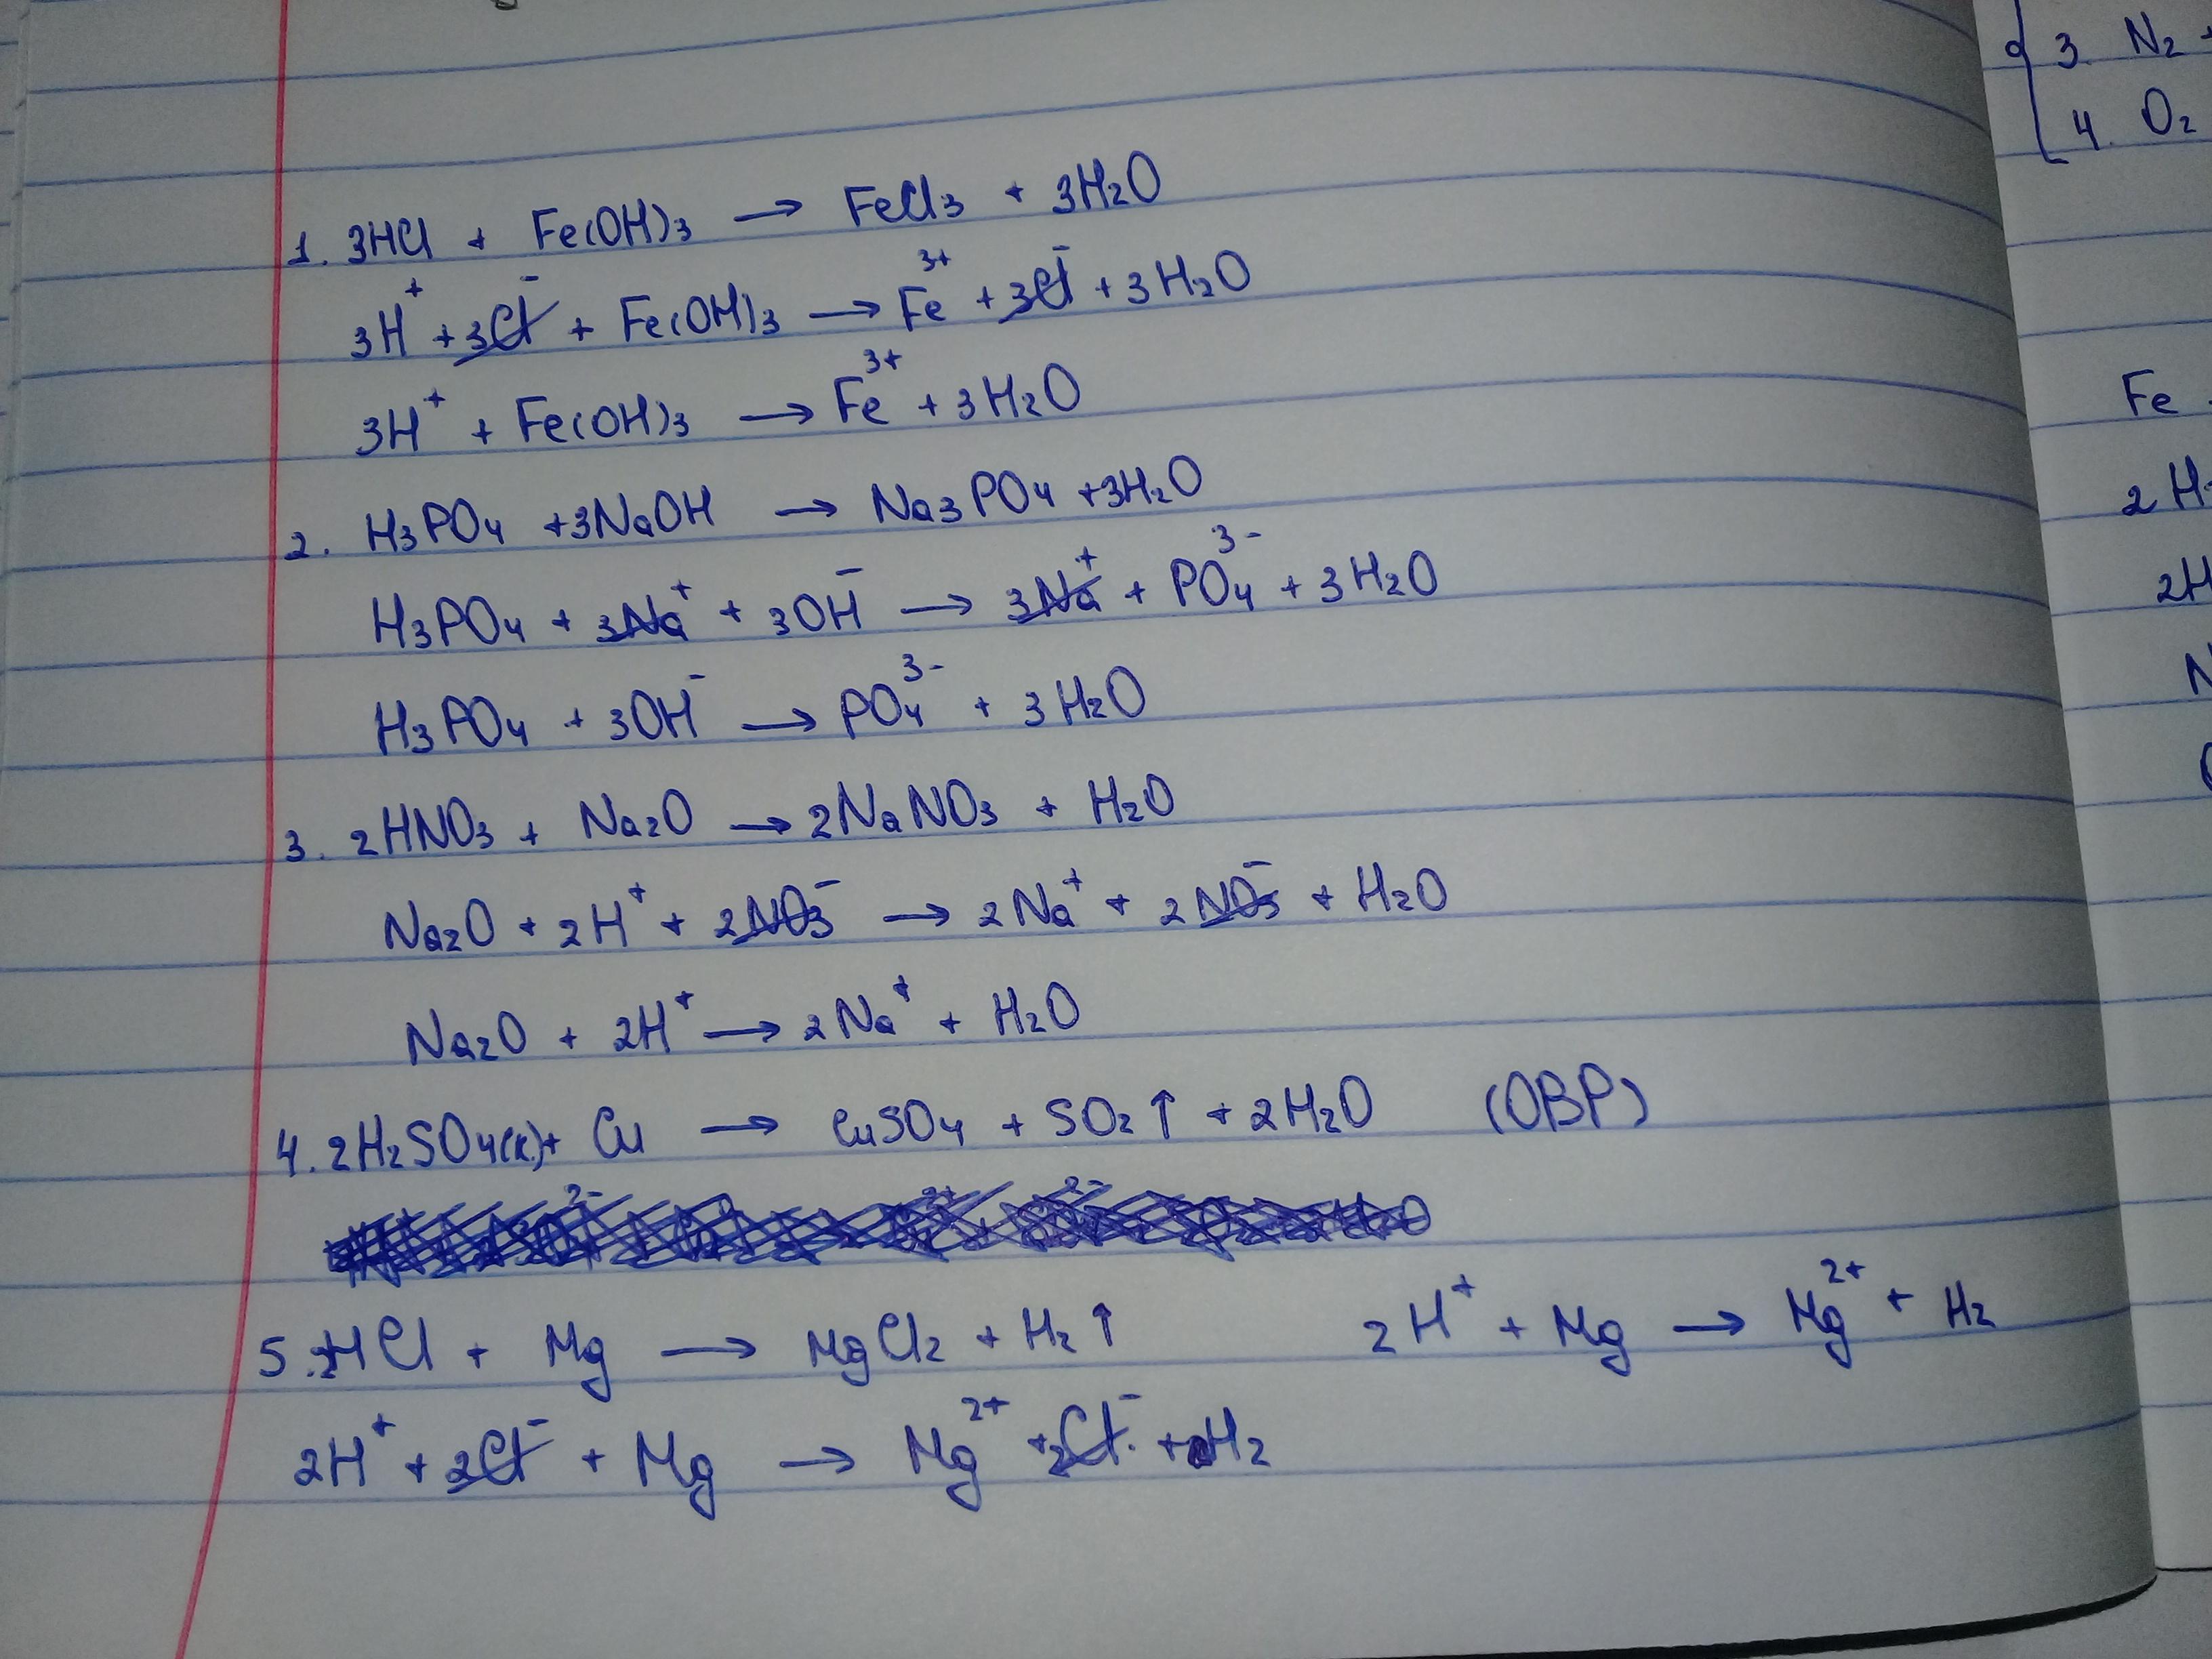 Cuso4 k3po4. Fe Oh 3 h2so4 ионное уравнение. Fe Oh 2 h2so4 закончить уравнение реакции. Уравнения возможных реакций h3po4. Закончить уравнения реакций al2o3+HCL.